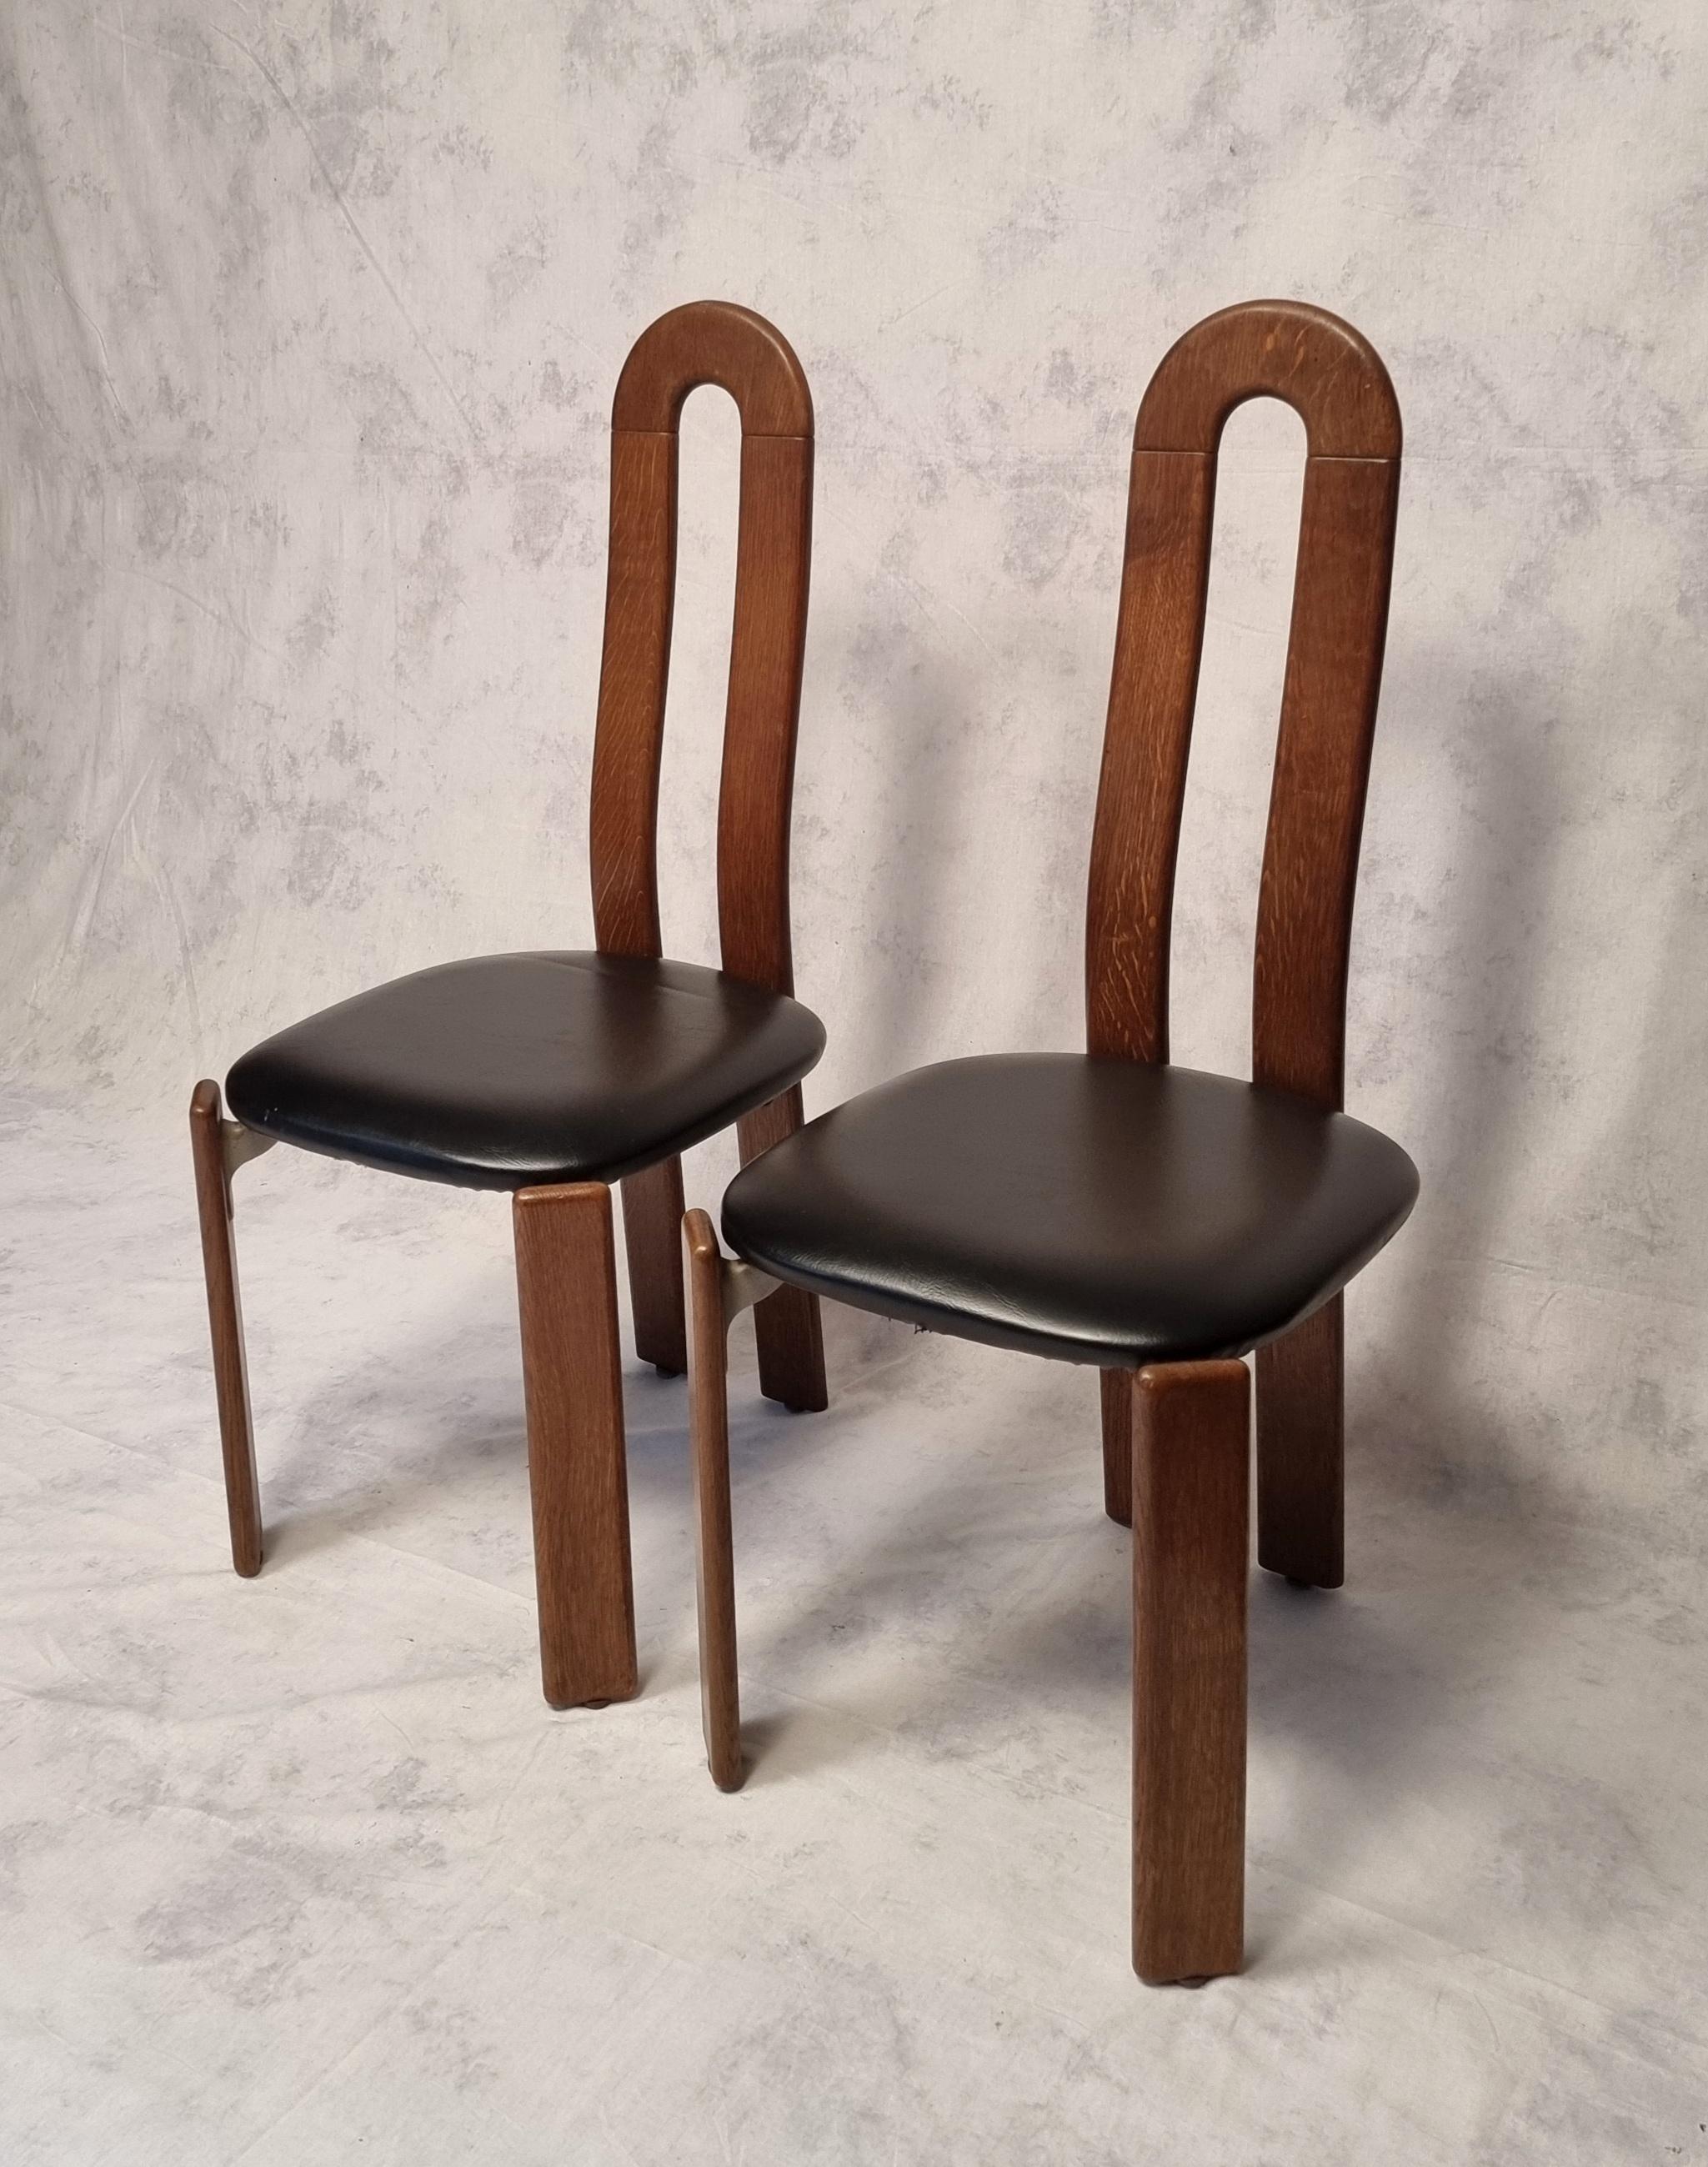 Hervorragendes und seltenes Stuhlpaar des bekannten Schweizer Designers Bruno Rey. Dieses Paar wird von seinem historischen Herausgeber Dietiker herausgegeben und von der Schweizer Werkstatt Stuhl aus Stein am Rhein hergestellt. Diese Stühle mit